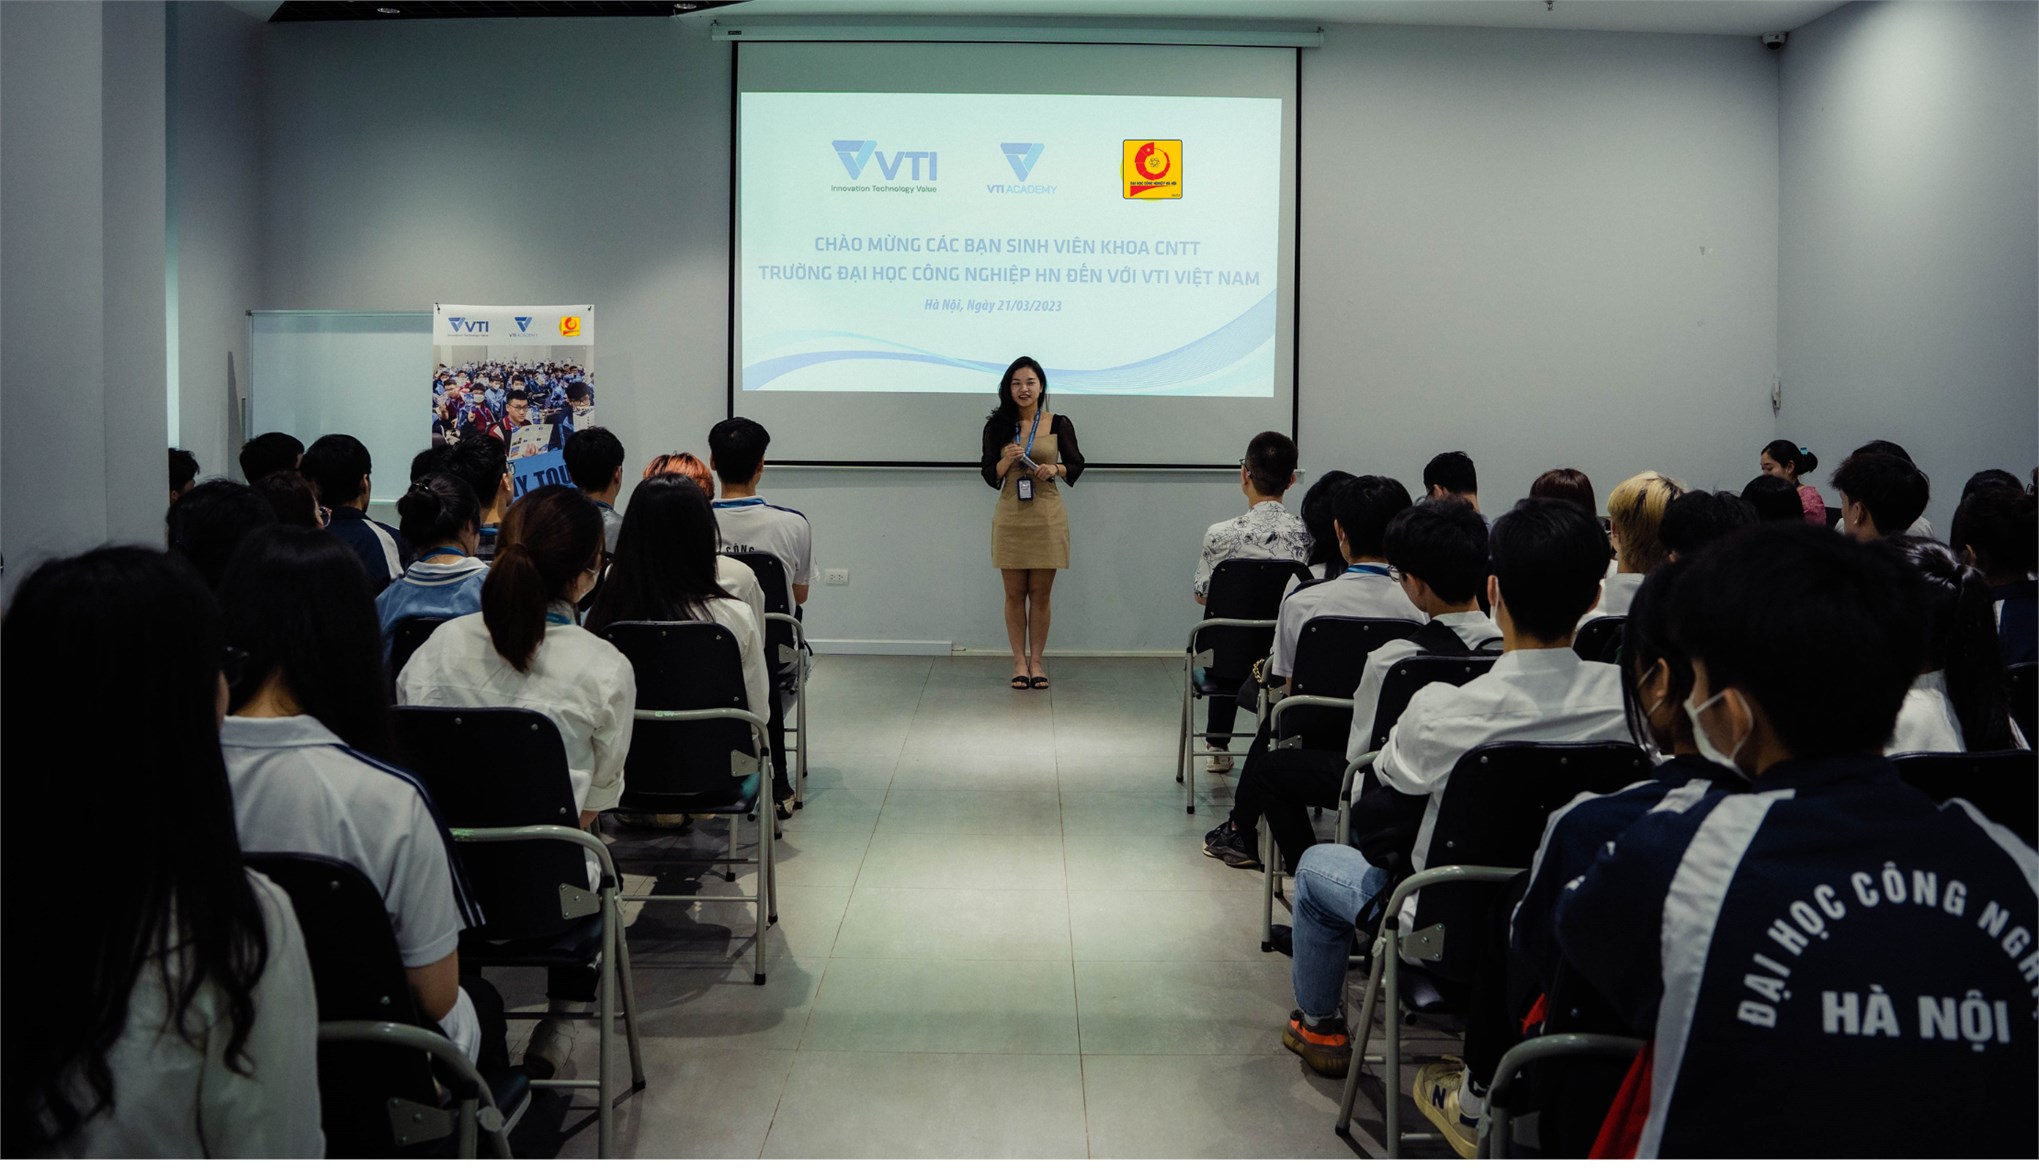 “Company Tour” cùng VTI: Điểm hẹn tương lai của sinh viên Trường Đại học Công nghiệp Hà Nội